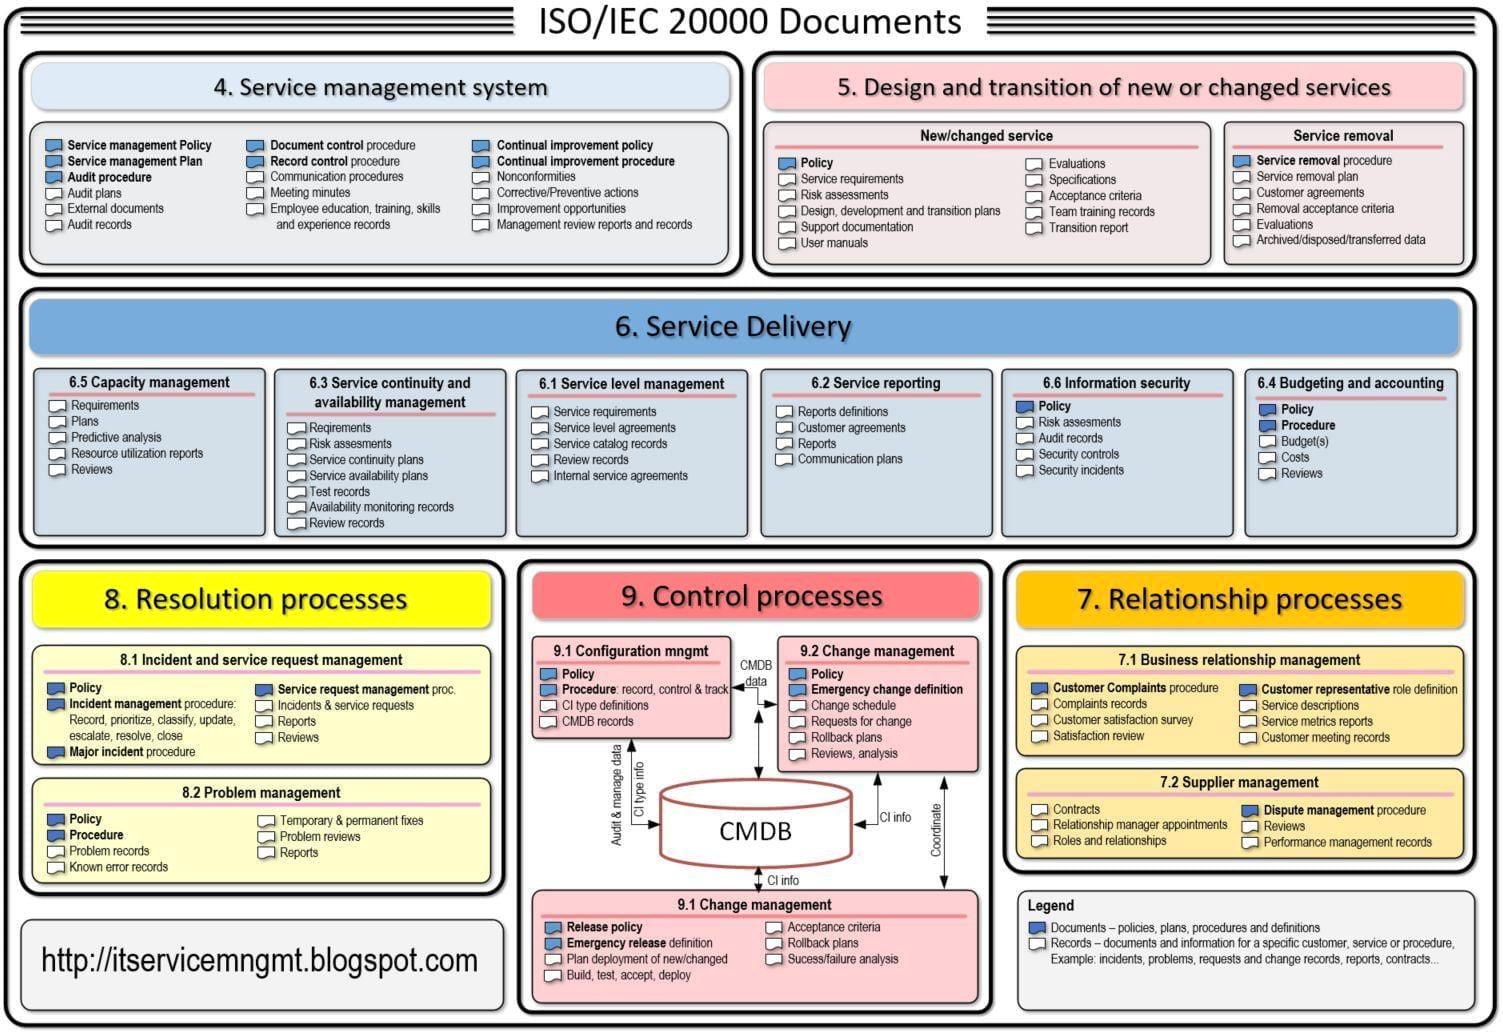 ISO 20000 Documentation